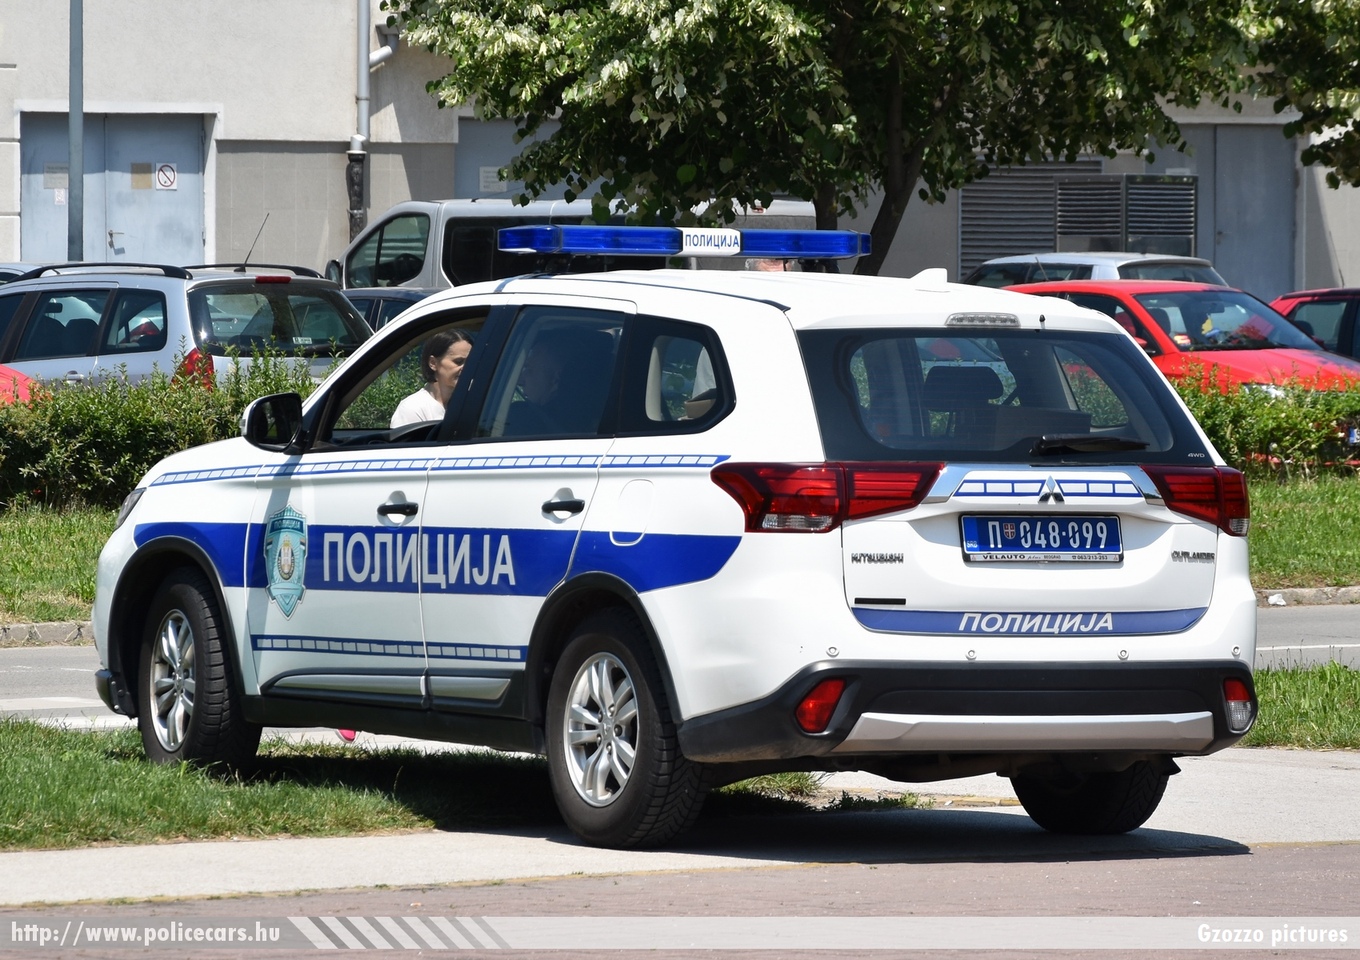 Mitsubishi Outlander, fotó: Gzozzo pictures
Keywords: szerb Szerbia rendőr rendőrautó rendőrség Serbia serbian police policecar